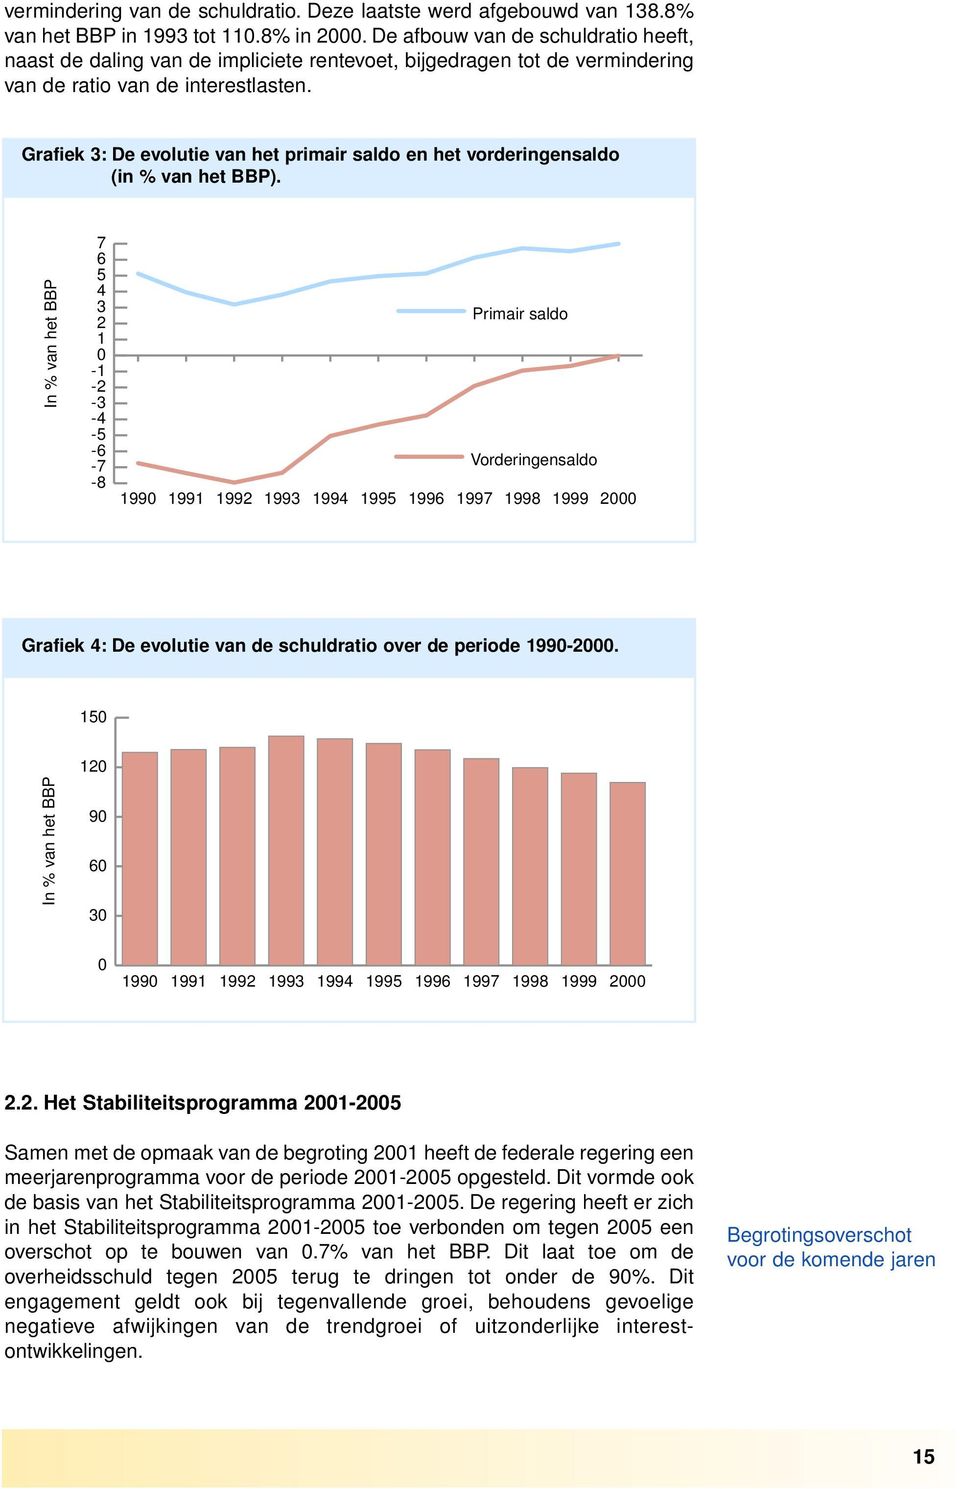 Grafiek 3: De evolutie van het primair saldo en het vorderingensaldo (in % van het BBP).